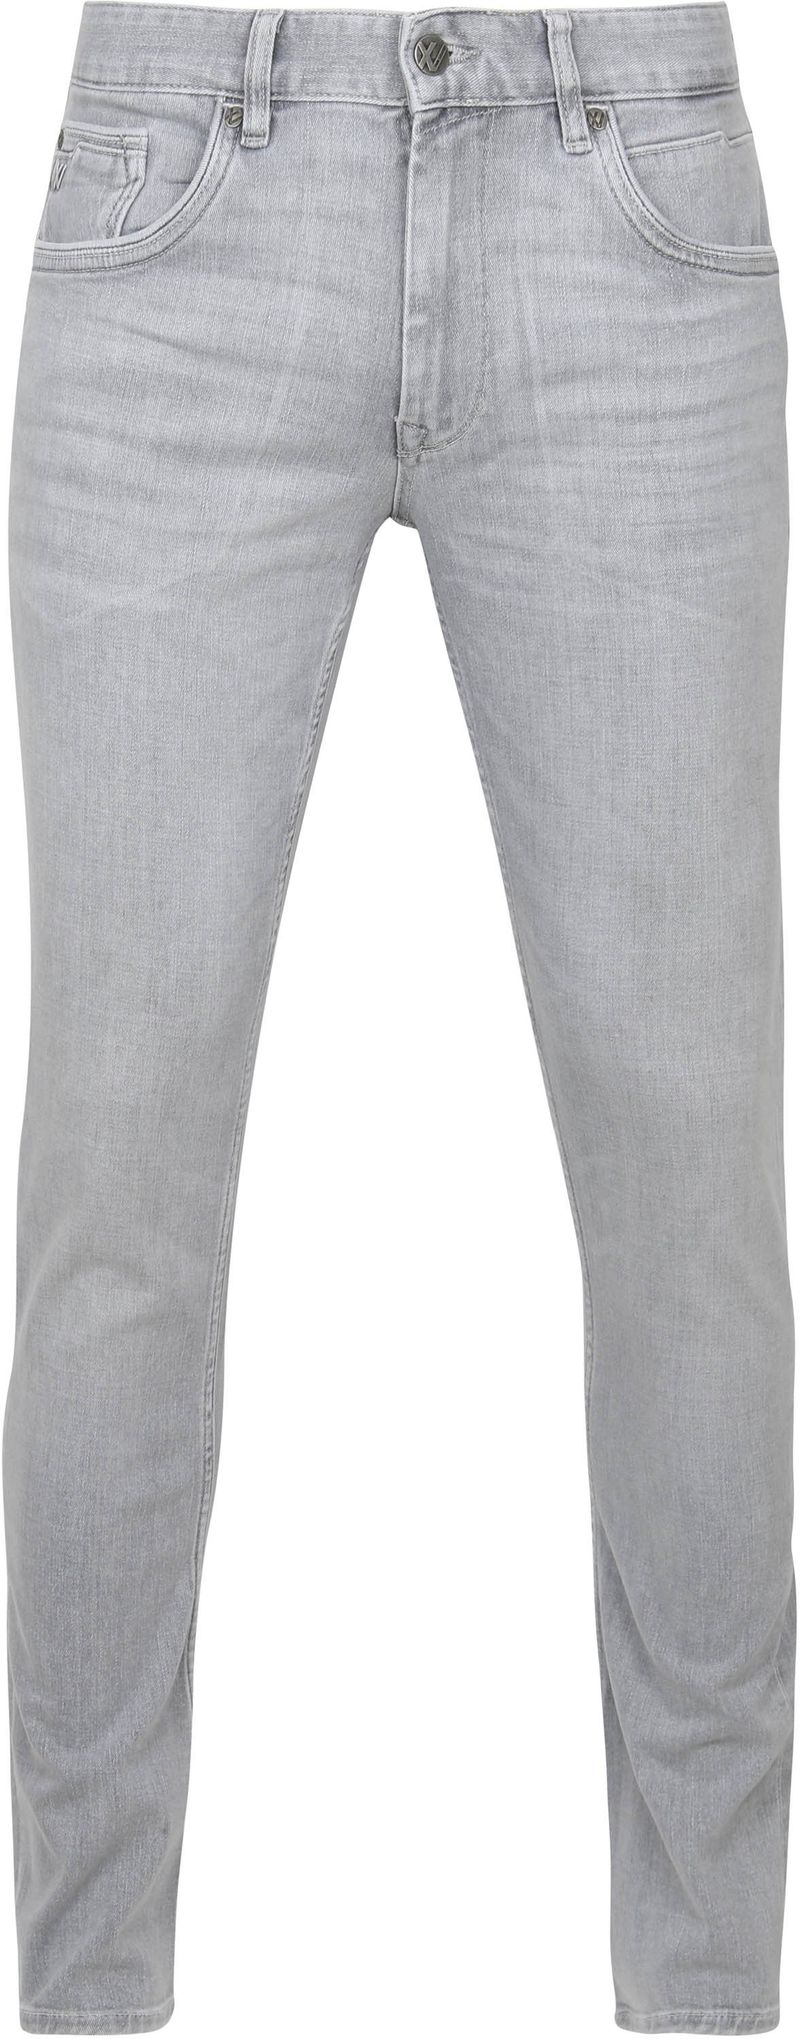 PME Legend Denim Jeans Hellgrau - Größe W 29 - L 32 günstig online kaufen